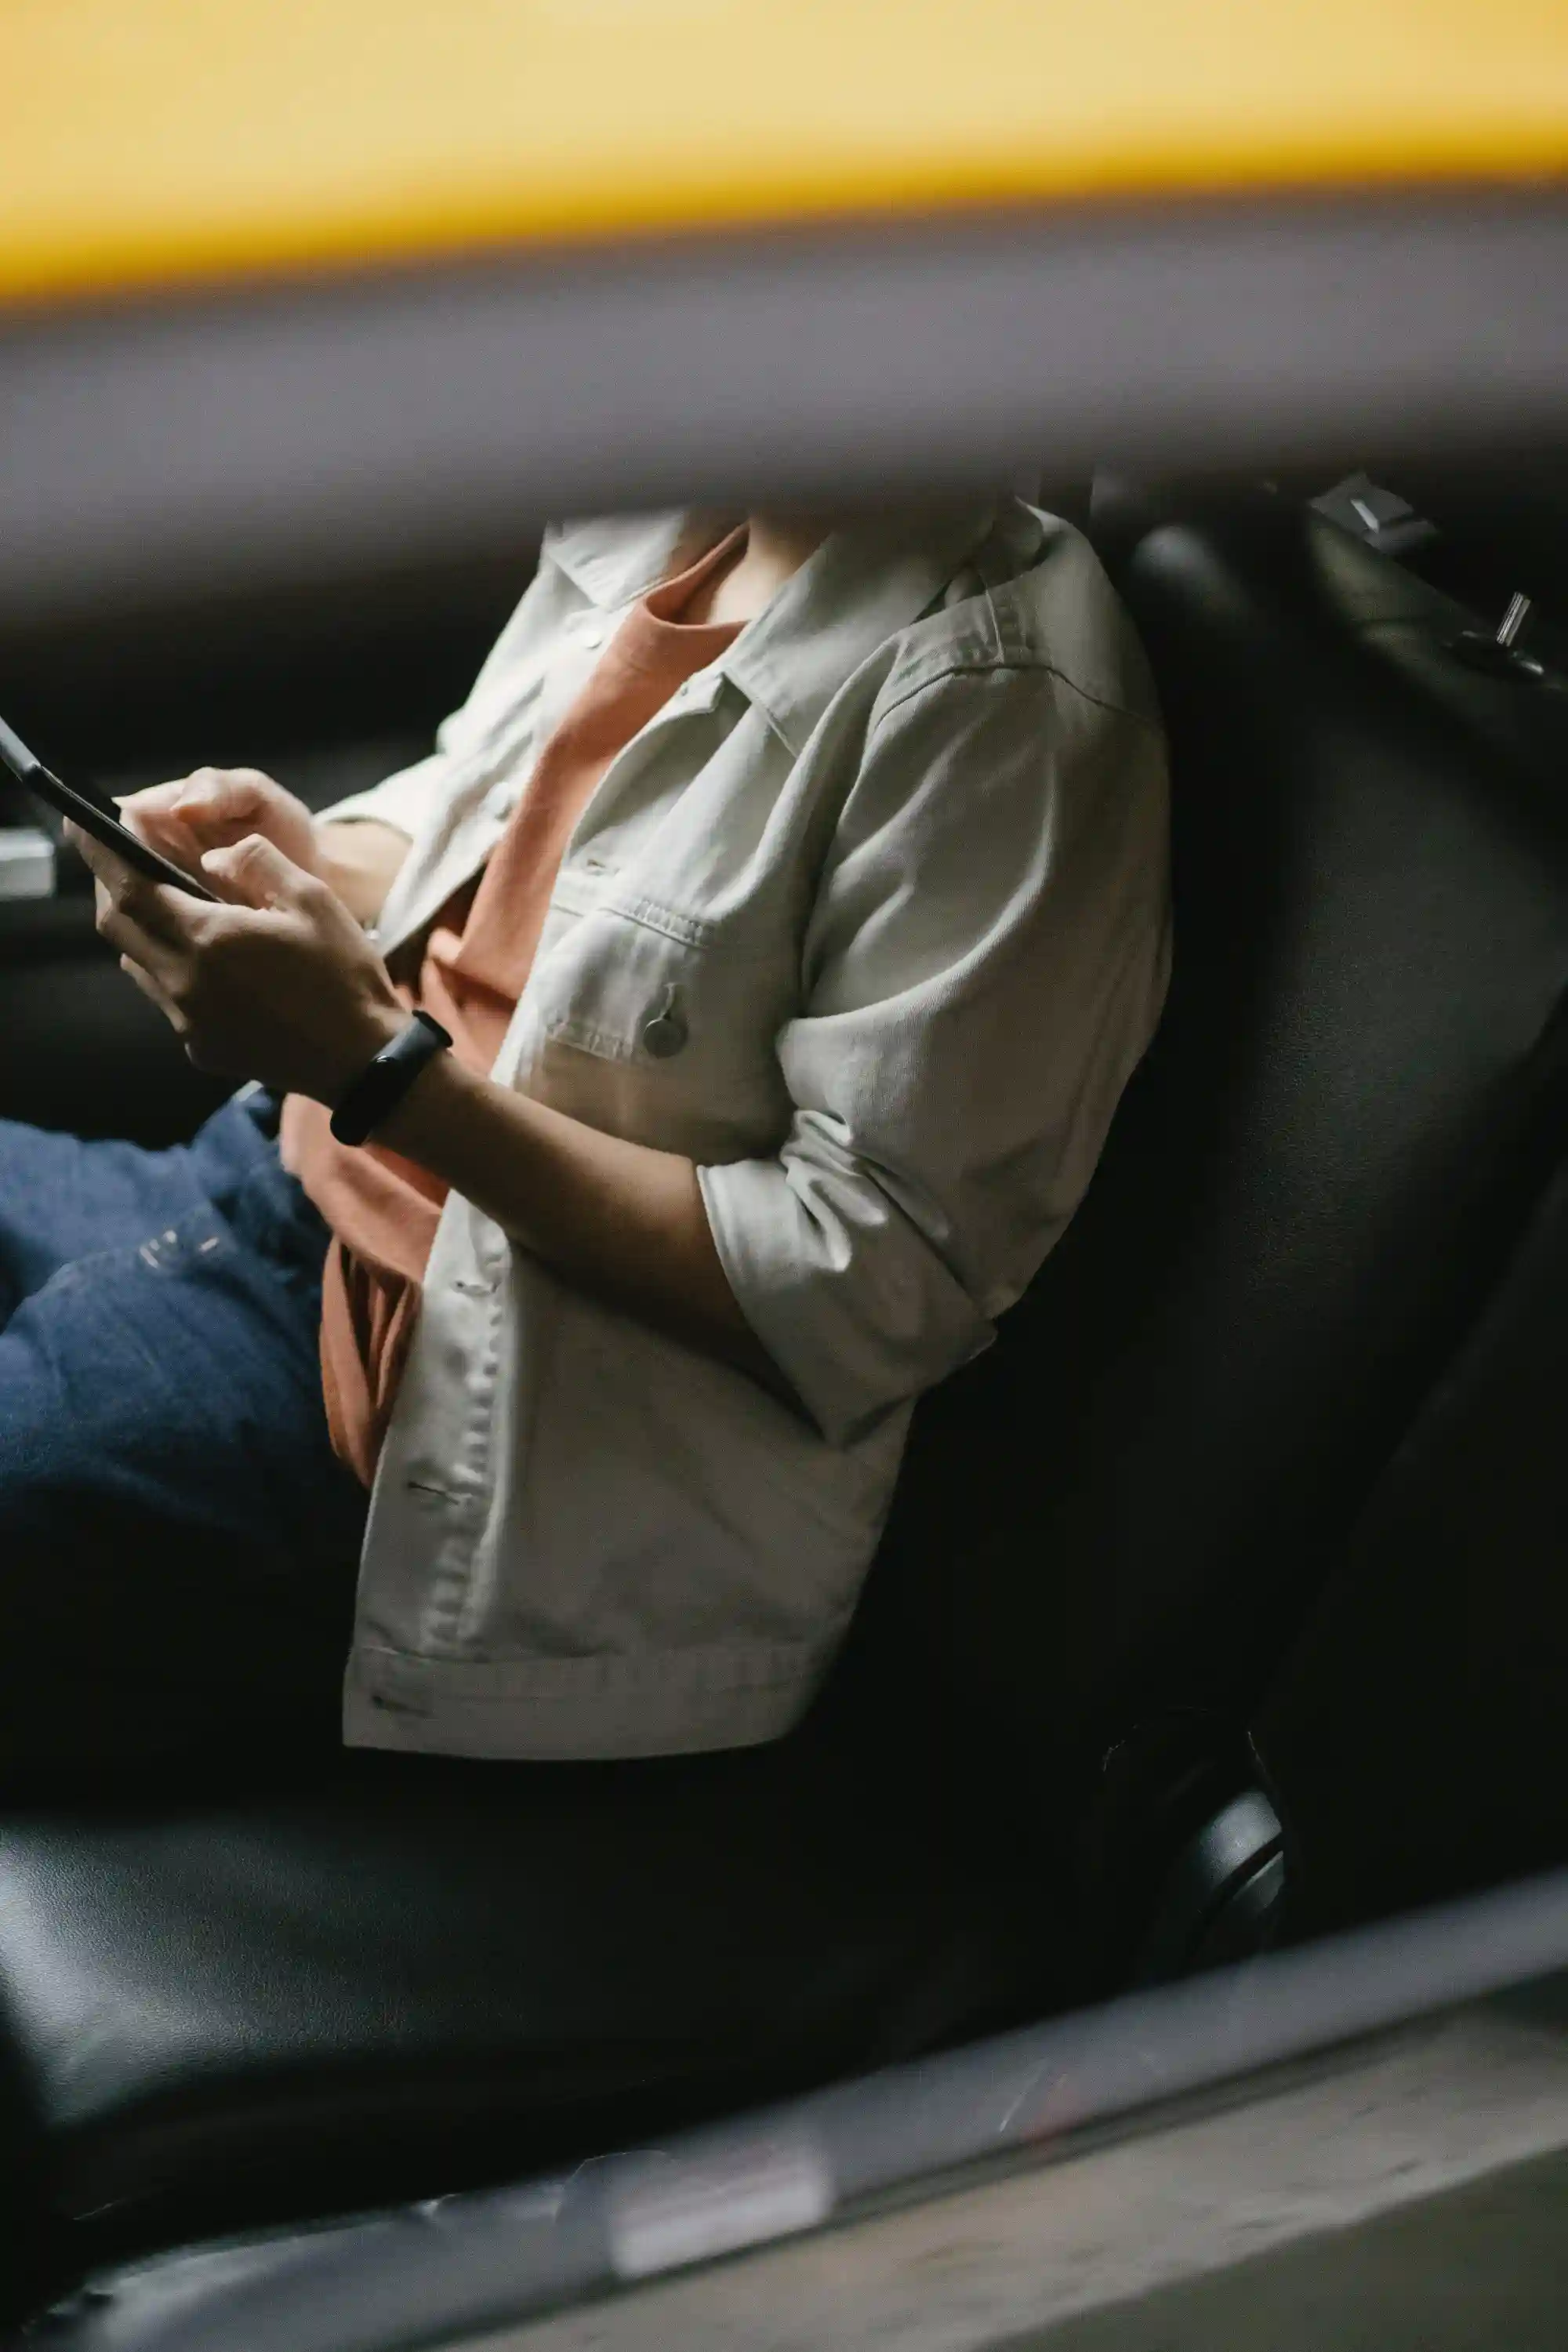 Une personne confortablement installée dans une voiture, utilisant une application de réservation de trajet sur son smartphone pour vérifier le prix avant de commencer son trajet